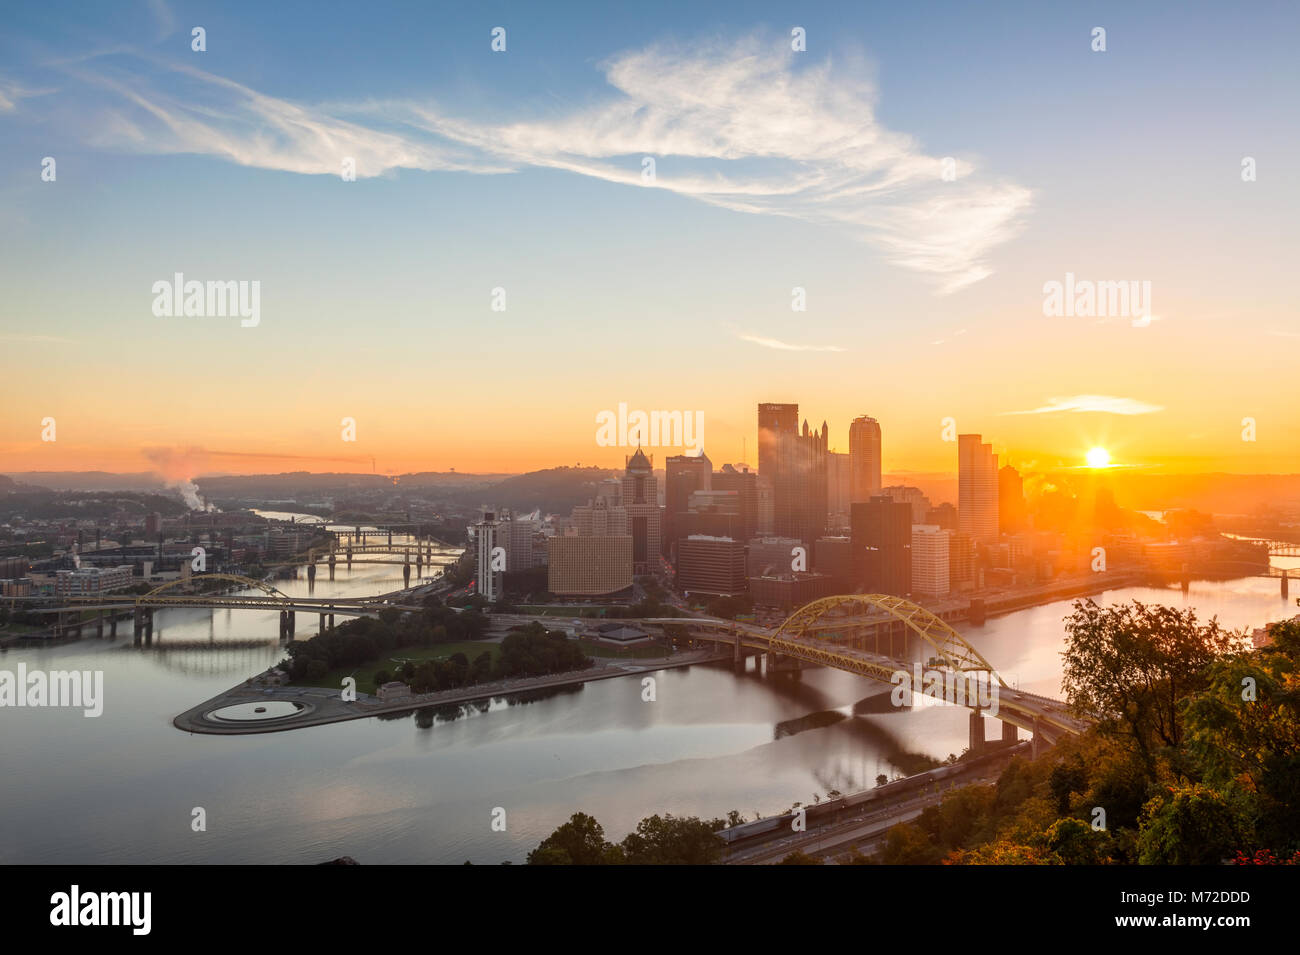 Le centre-ville de Pittsburgh skyline avec la rivière Allegheny et la rivière Monongahela au lever du soleil à Pittsburgh, Pennsylvanie, USA. Banque D'Images